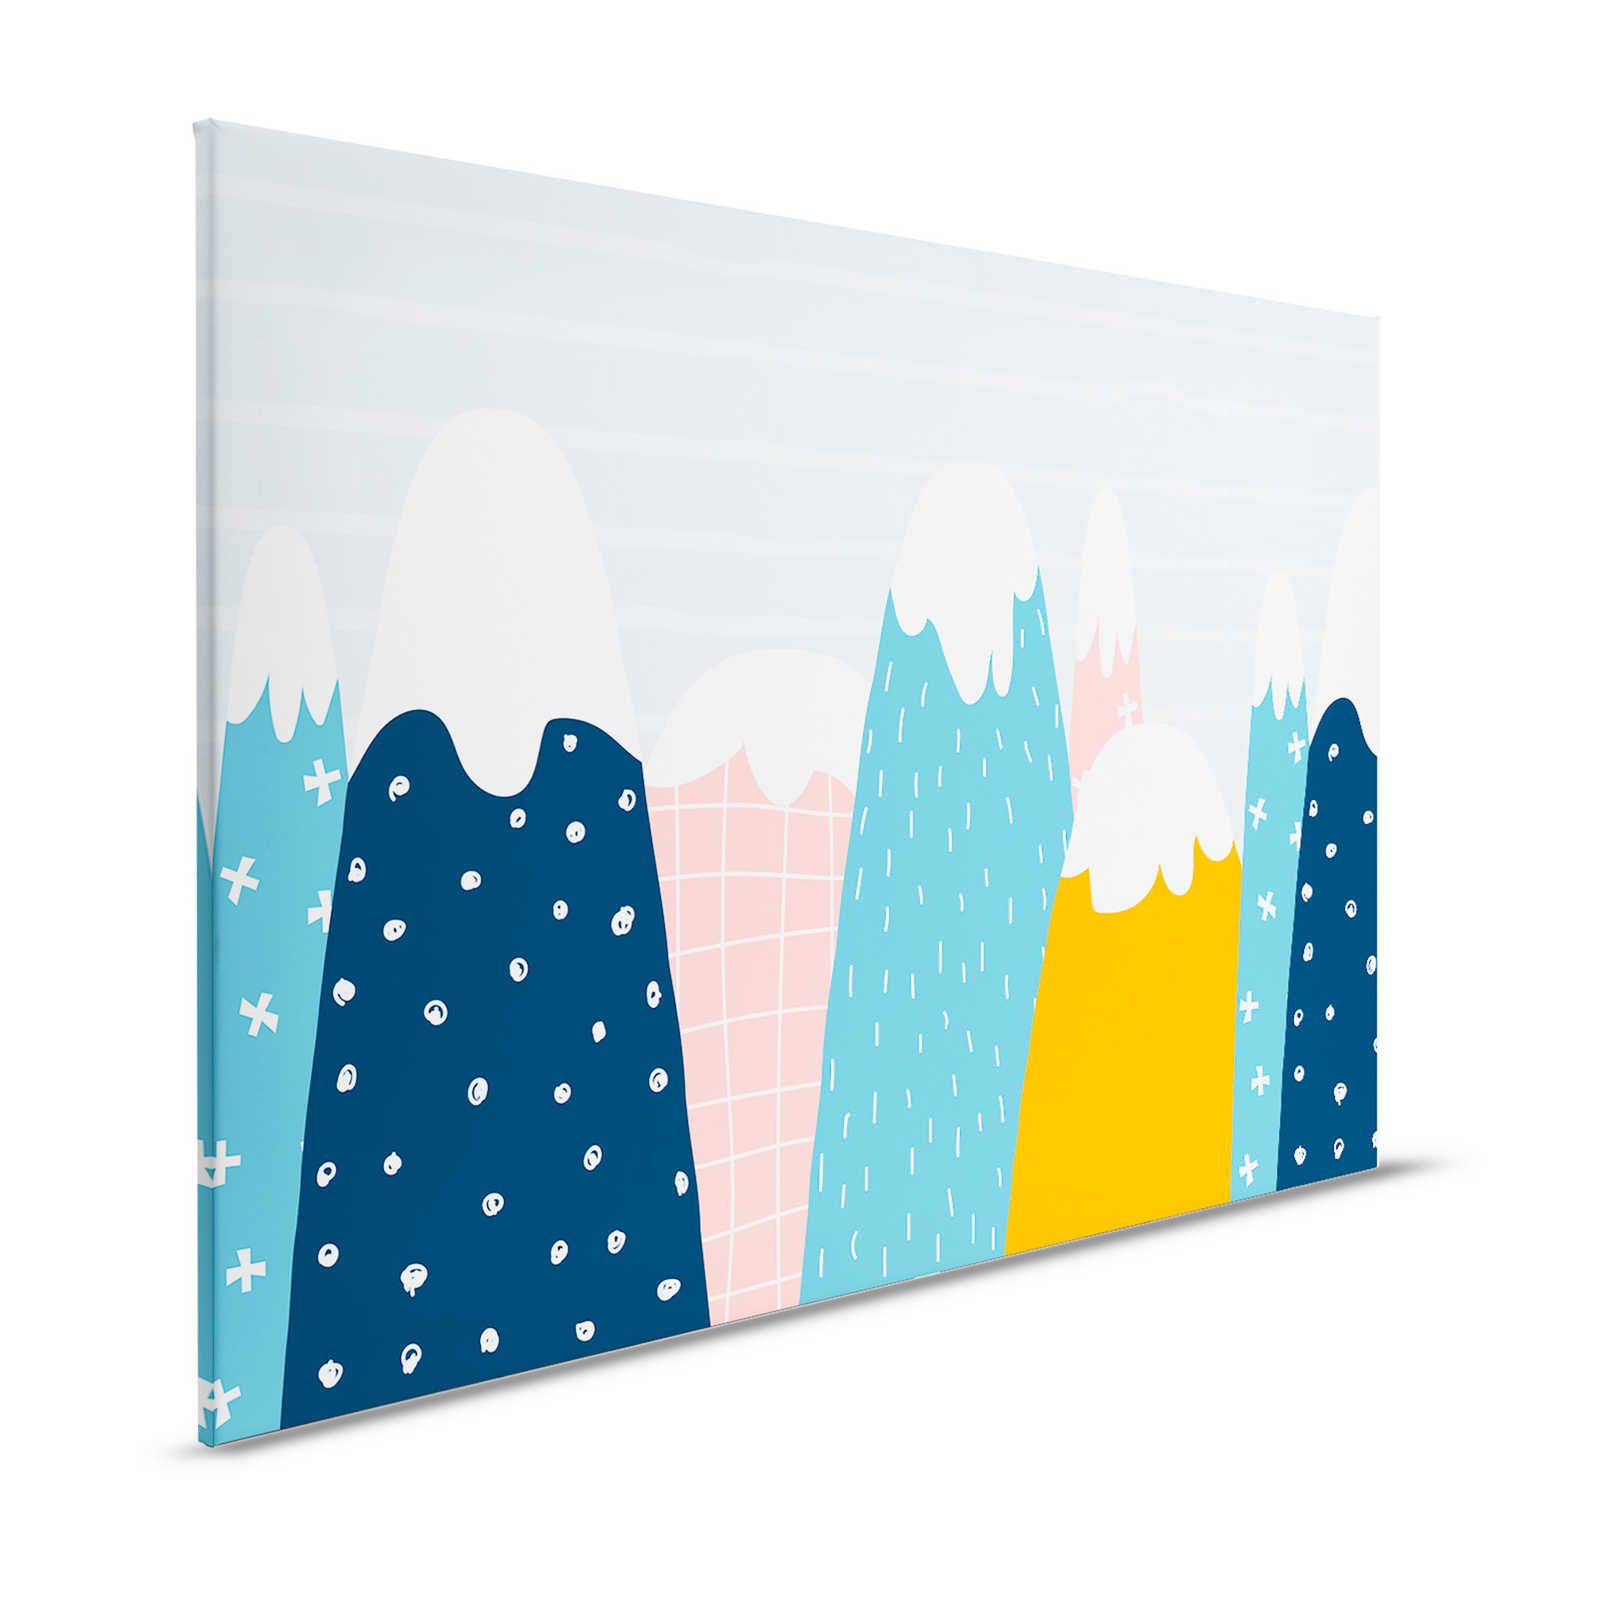 Toile avec collines enneigées de style peint - 120 cm x 80 cm
